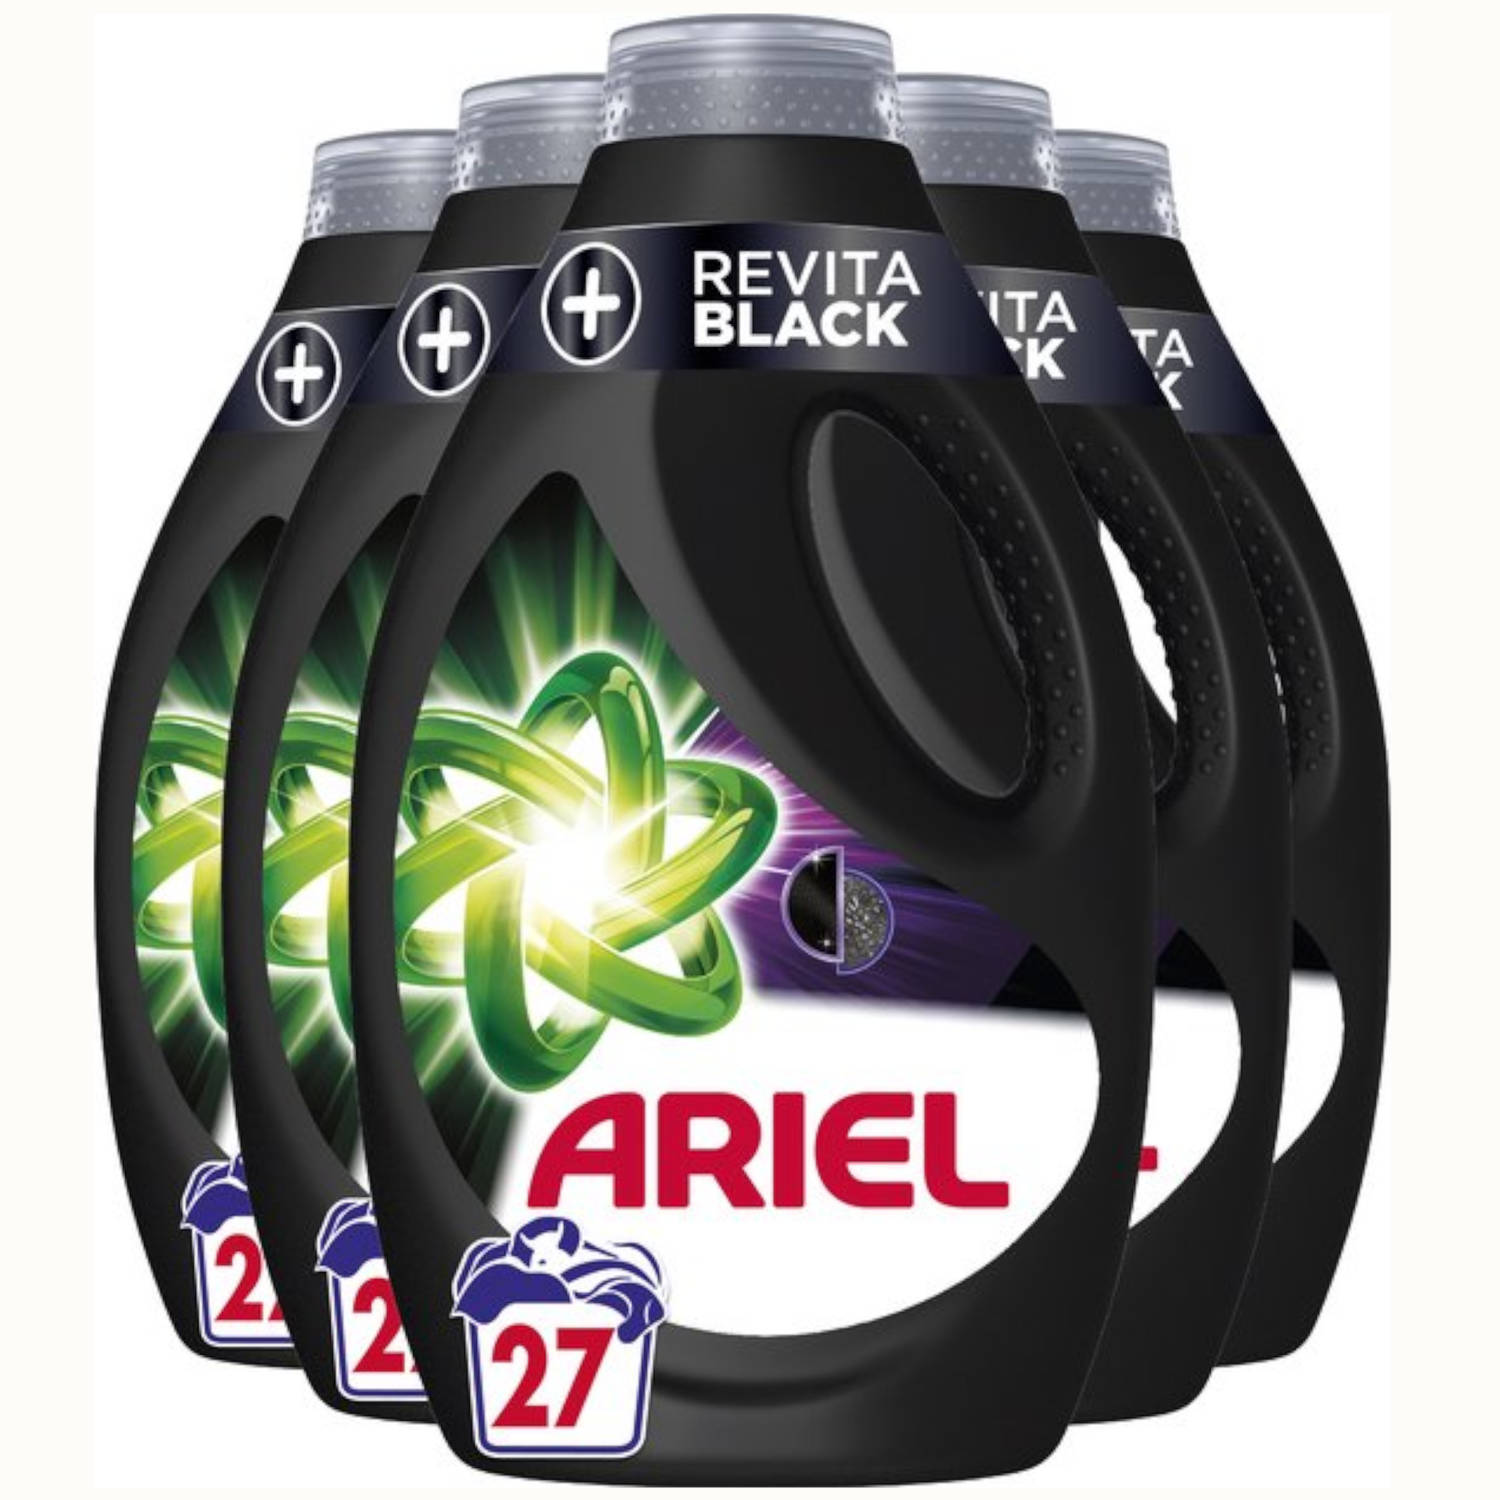 5x Ariel Vloeibaar Wasmiddel +Revita Black 1220 ml